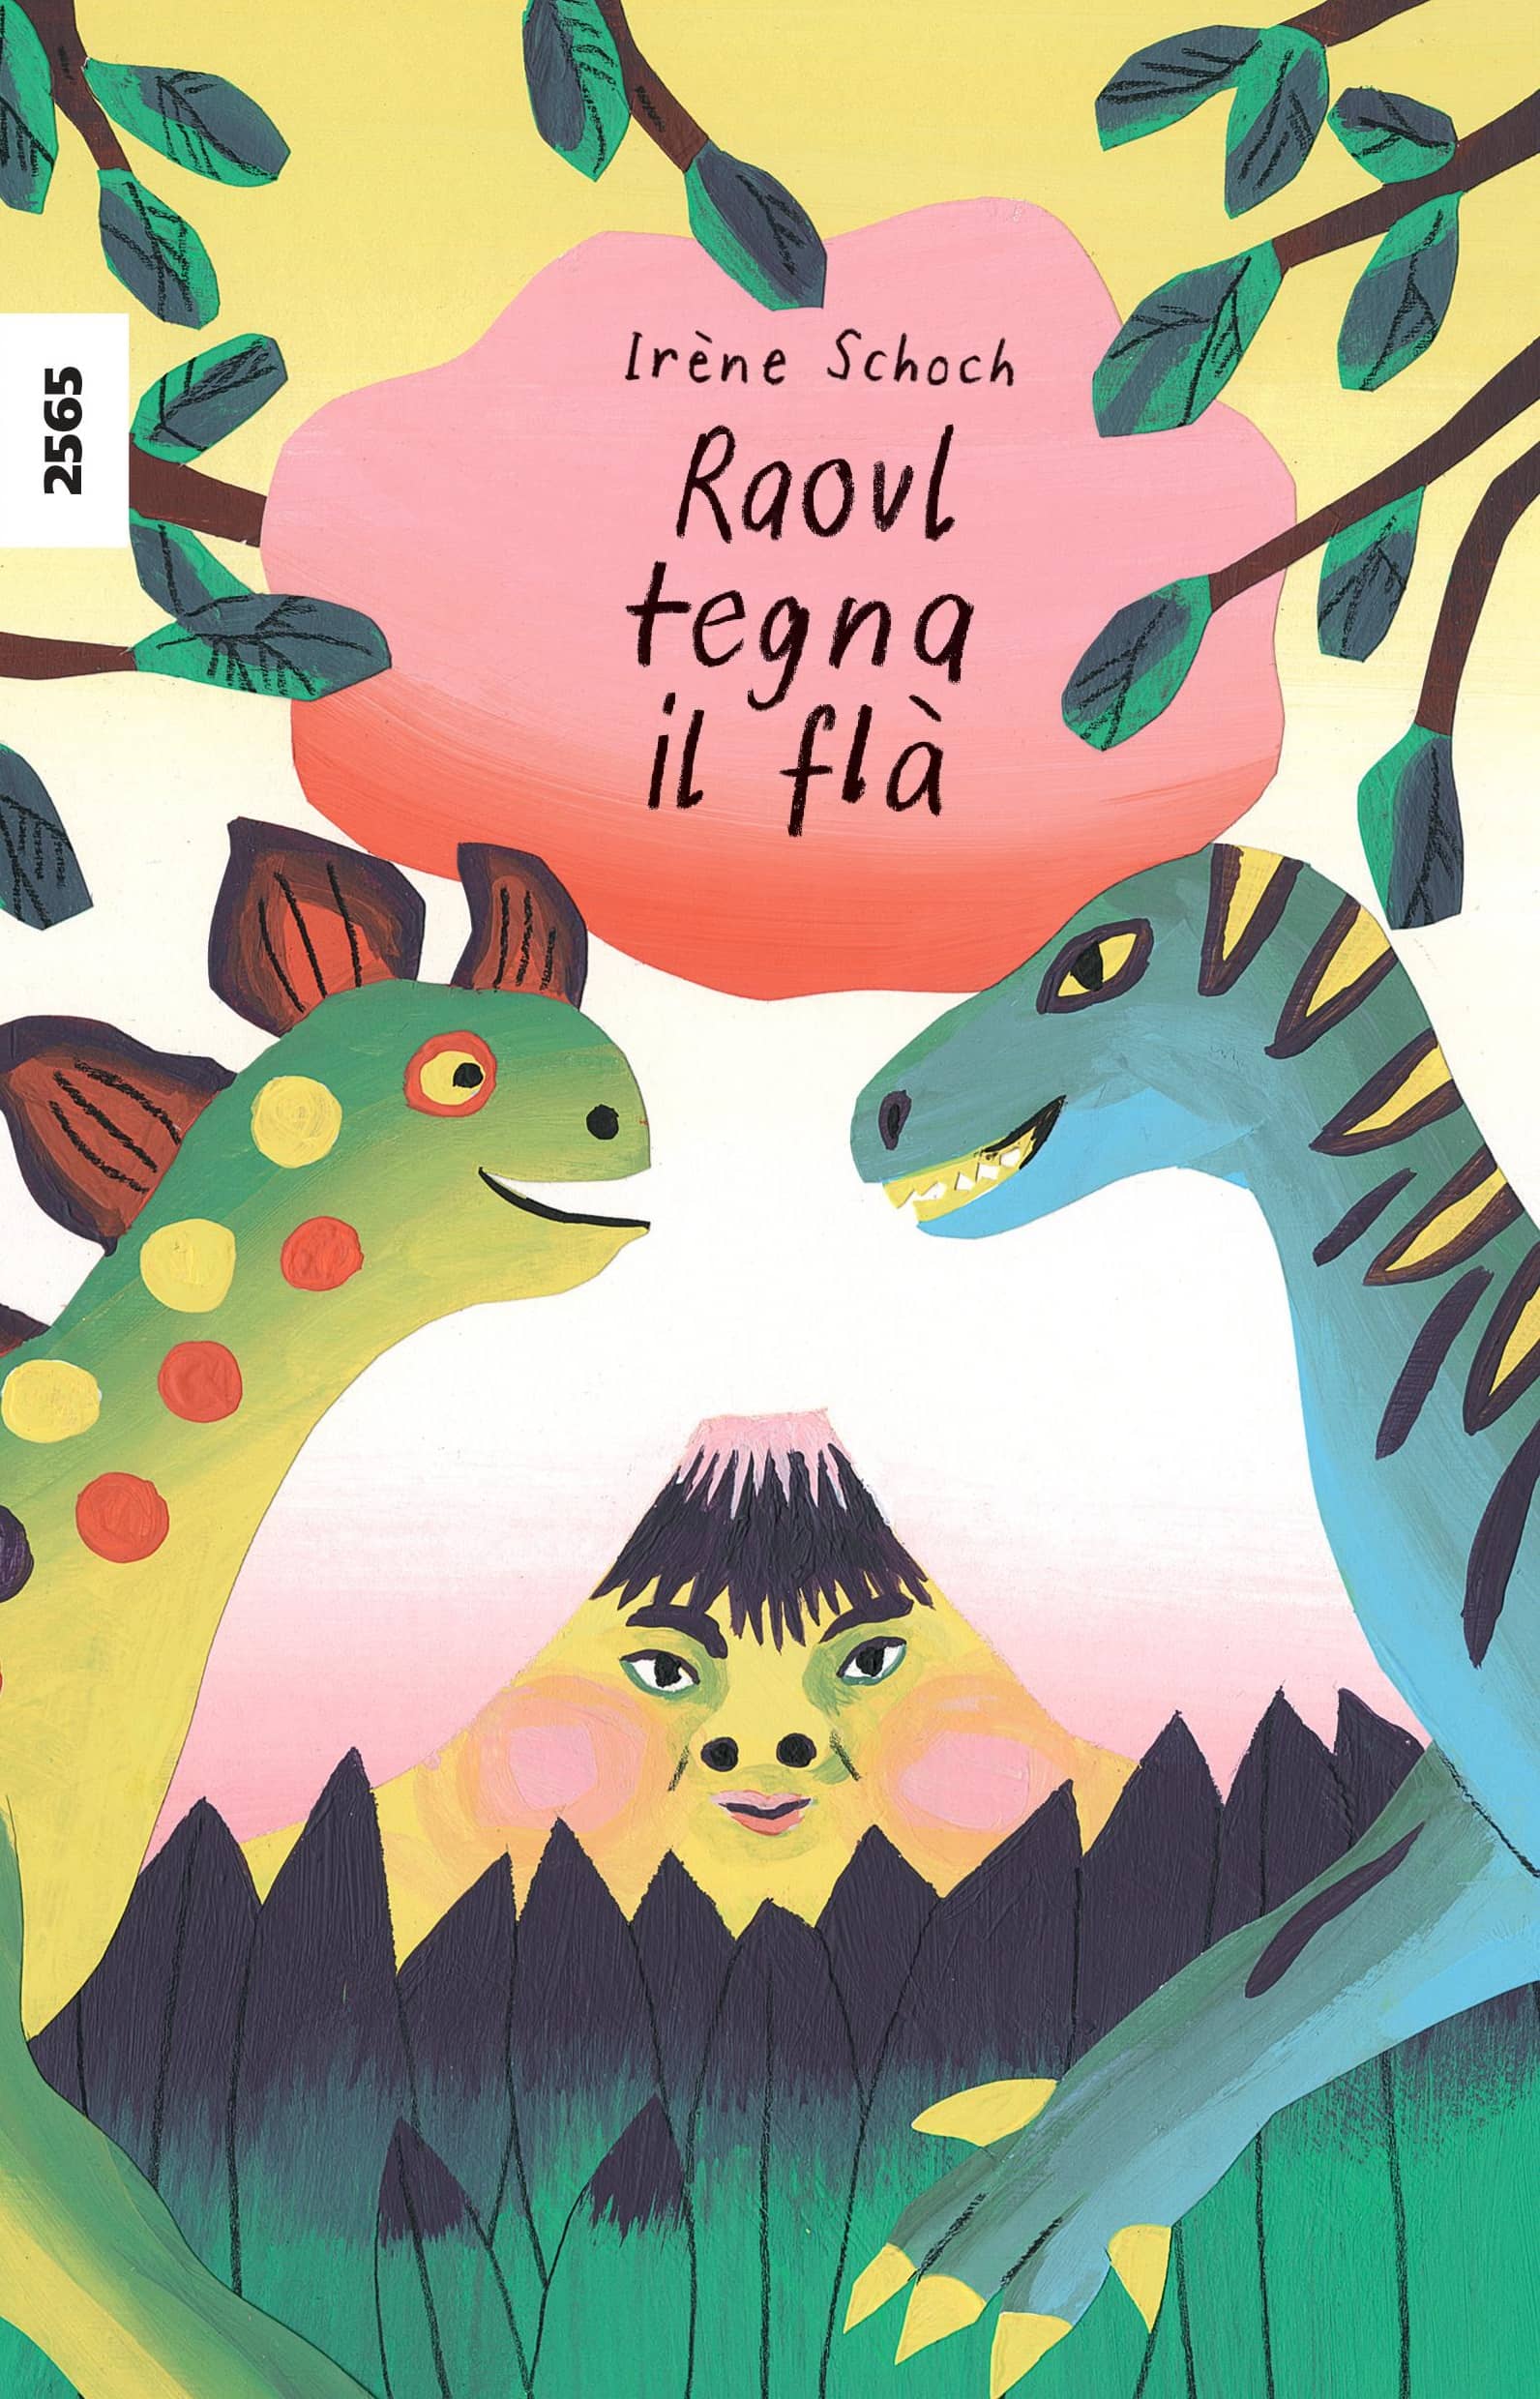 Raoul tegna il flà, ein Kinderbuch von Irène Schoch, SJW Verlag, Gefühle, Erstlesetext